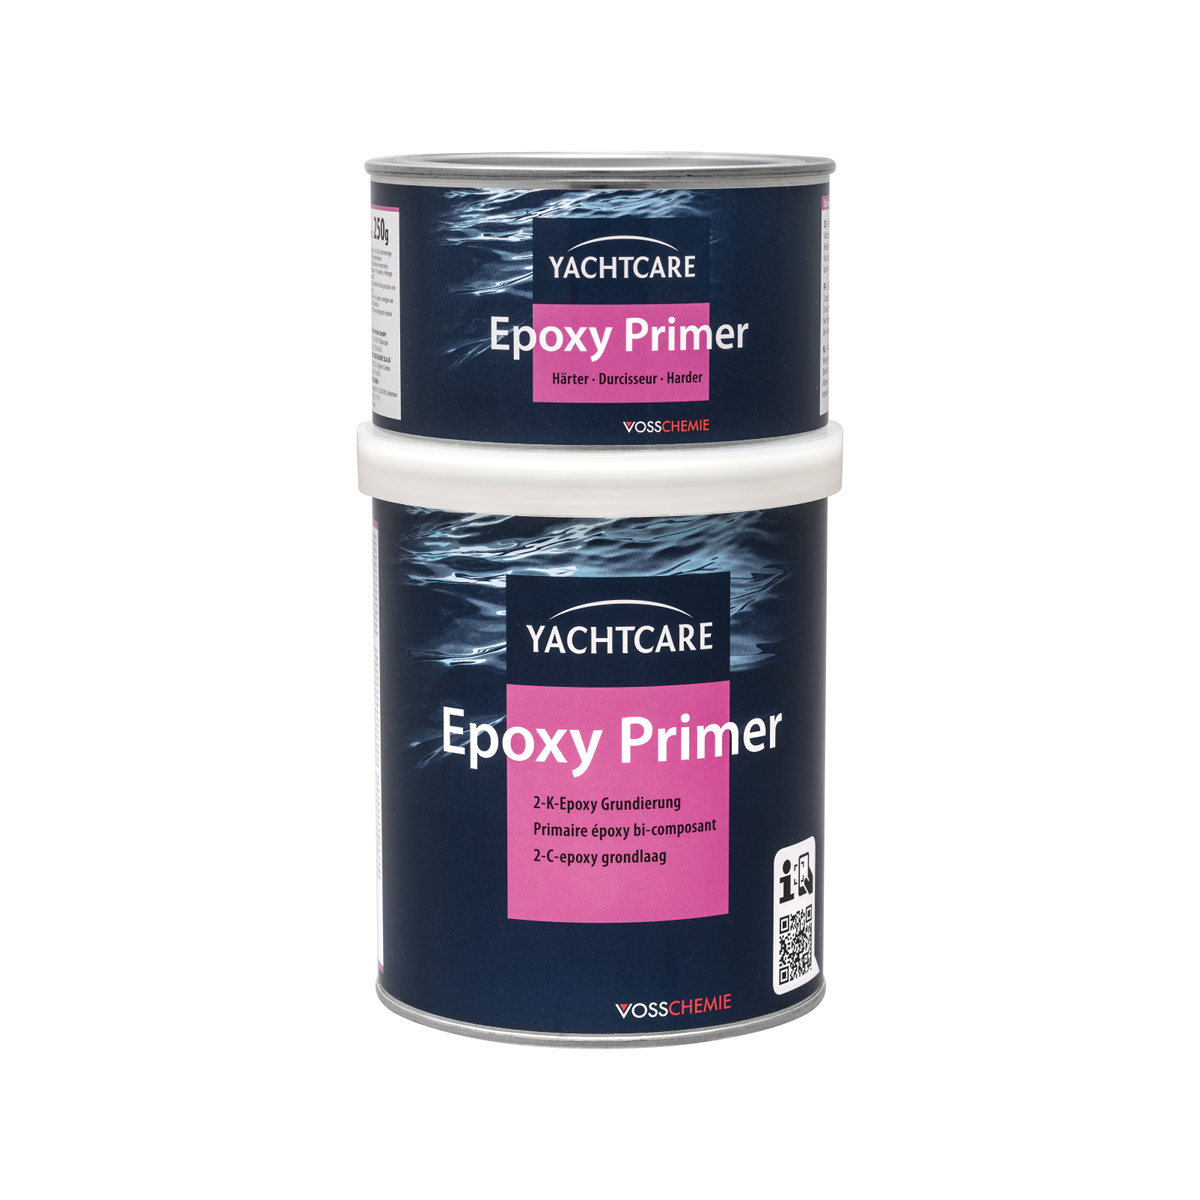 Yachtcare Epoxy Primer primaire époxy bi-composant - blanc, 2,25l 